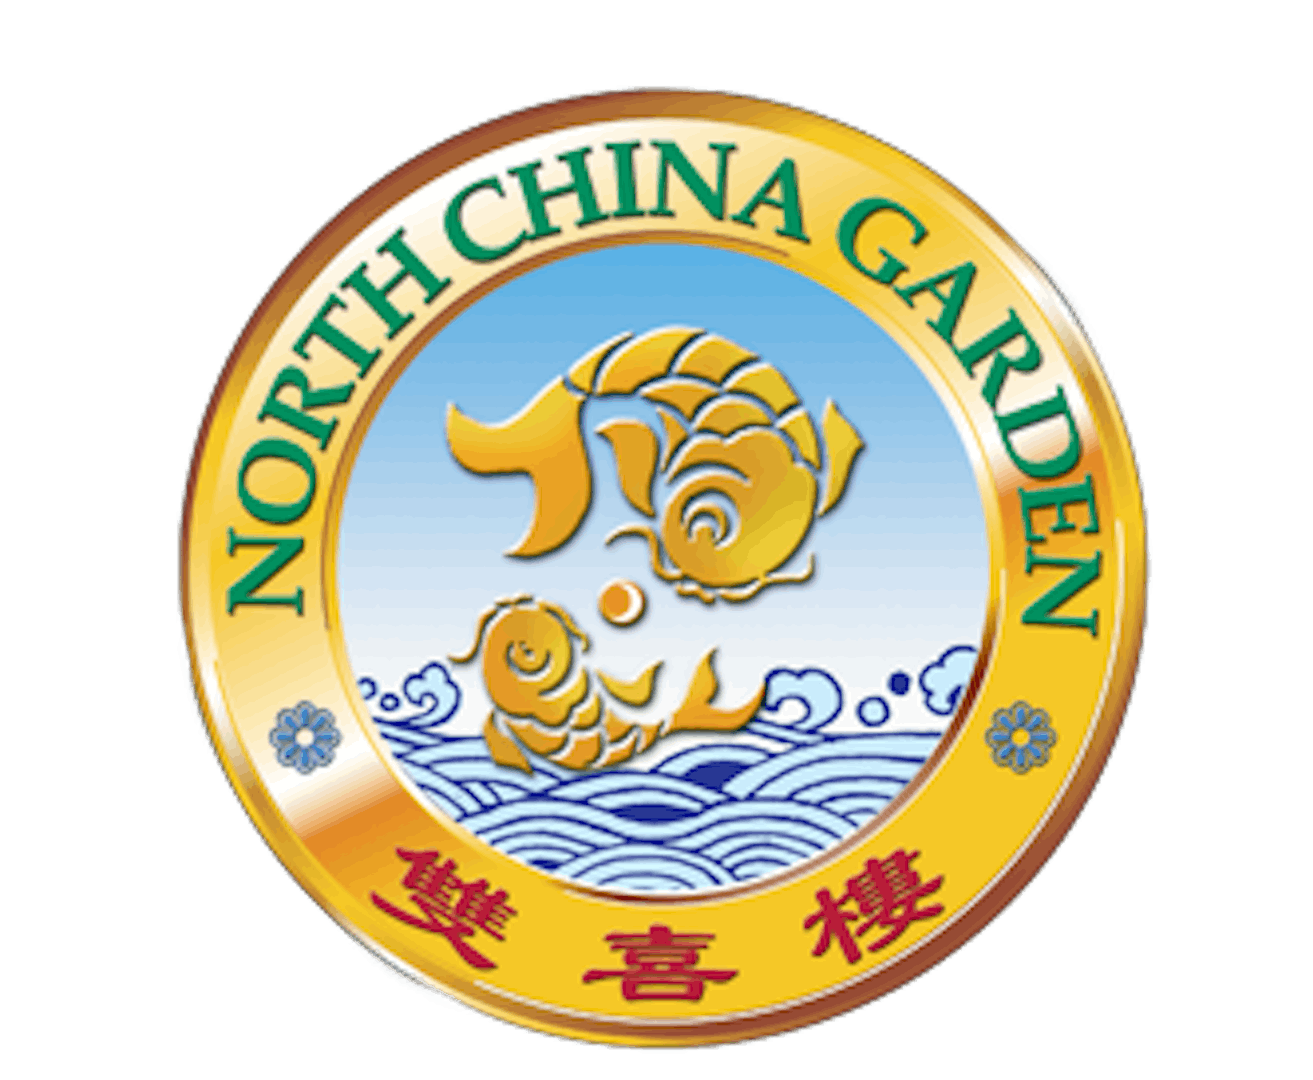 North China Garden Tacoma Wa 98403 Menu Order Online